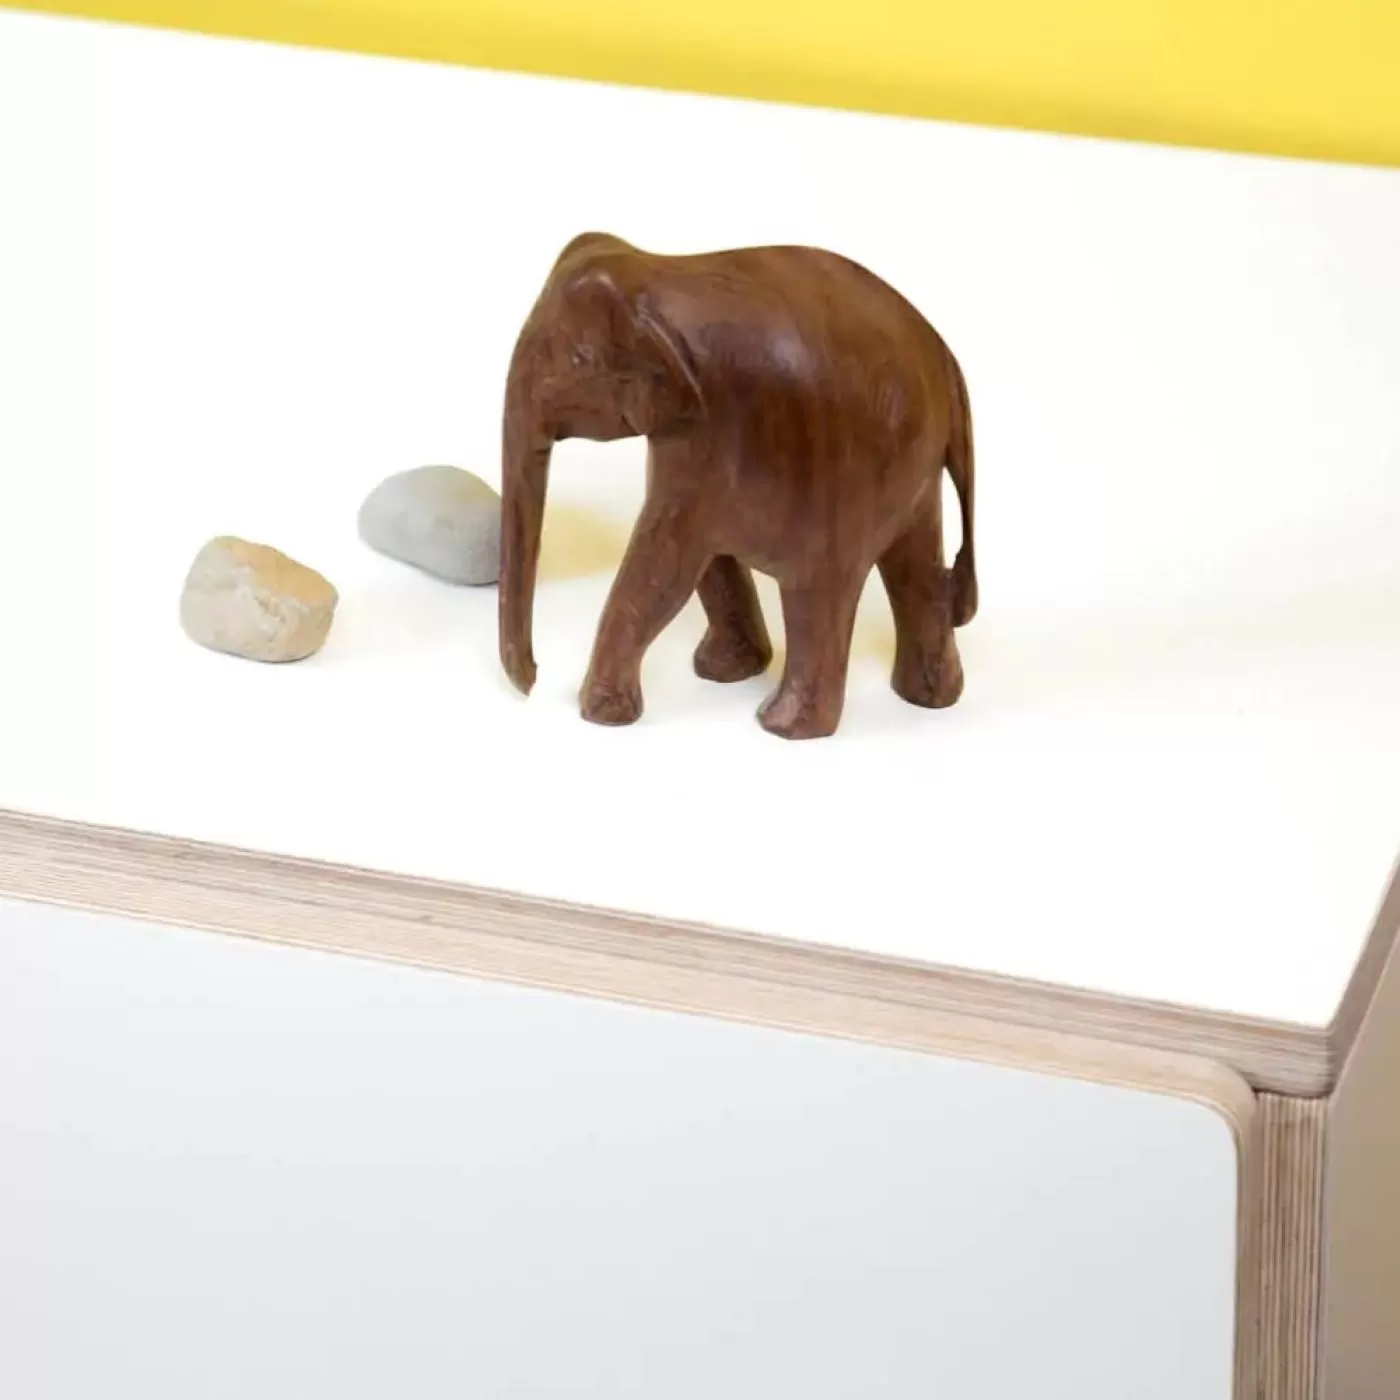 Biały laminat na sklejce fragment mebla firmy RADIS z 2 kamykami i brązową drewnianą figurką słonia